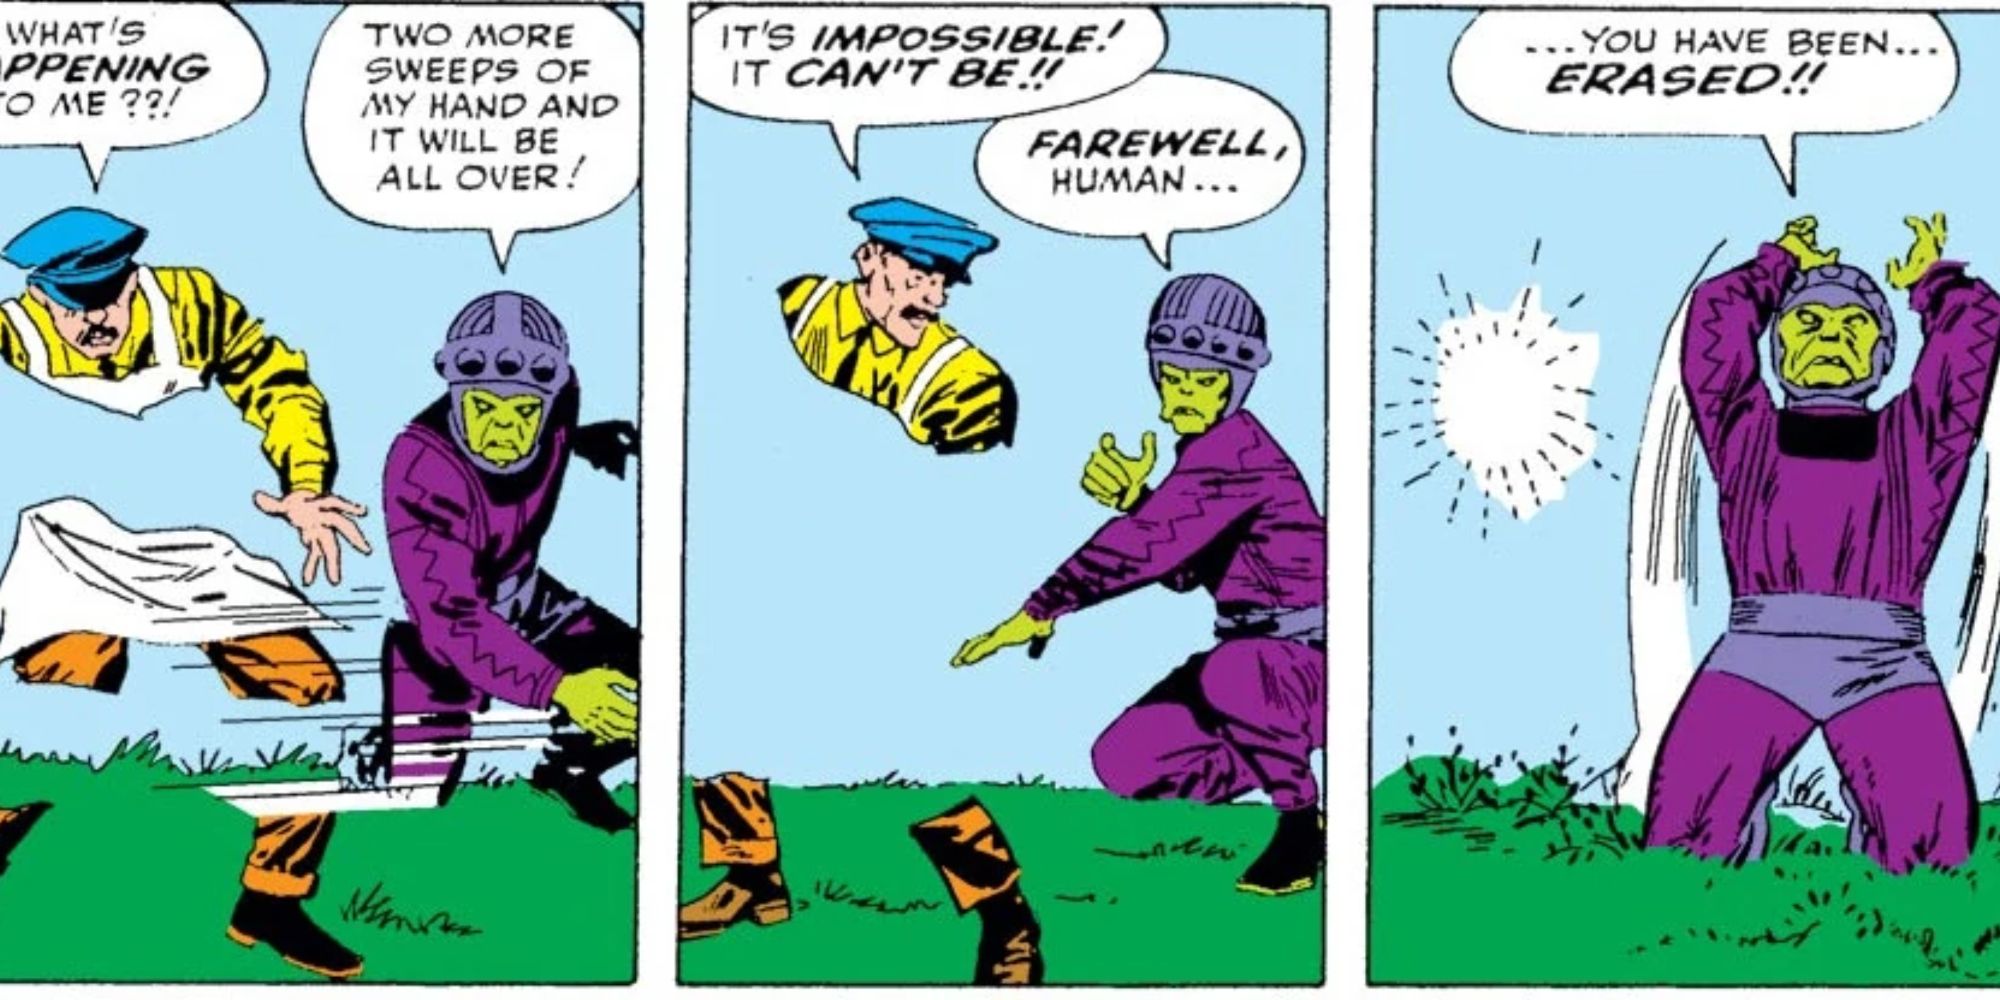 O Living Eraser apaga um homem na Marvel Comics.